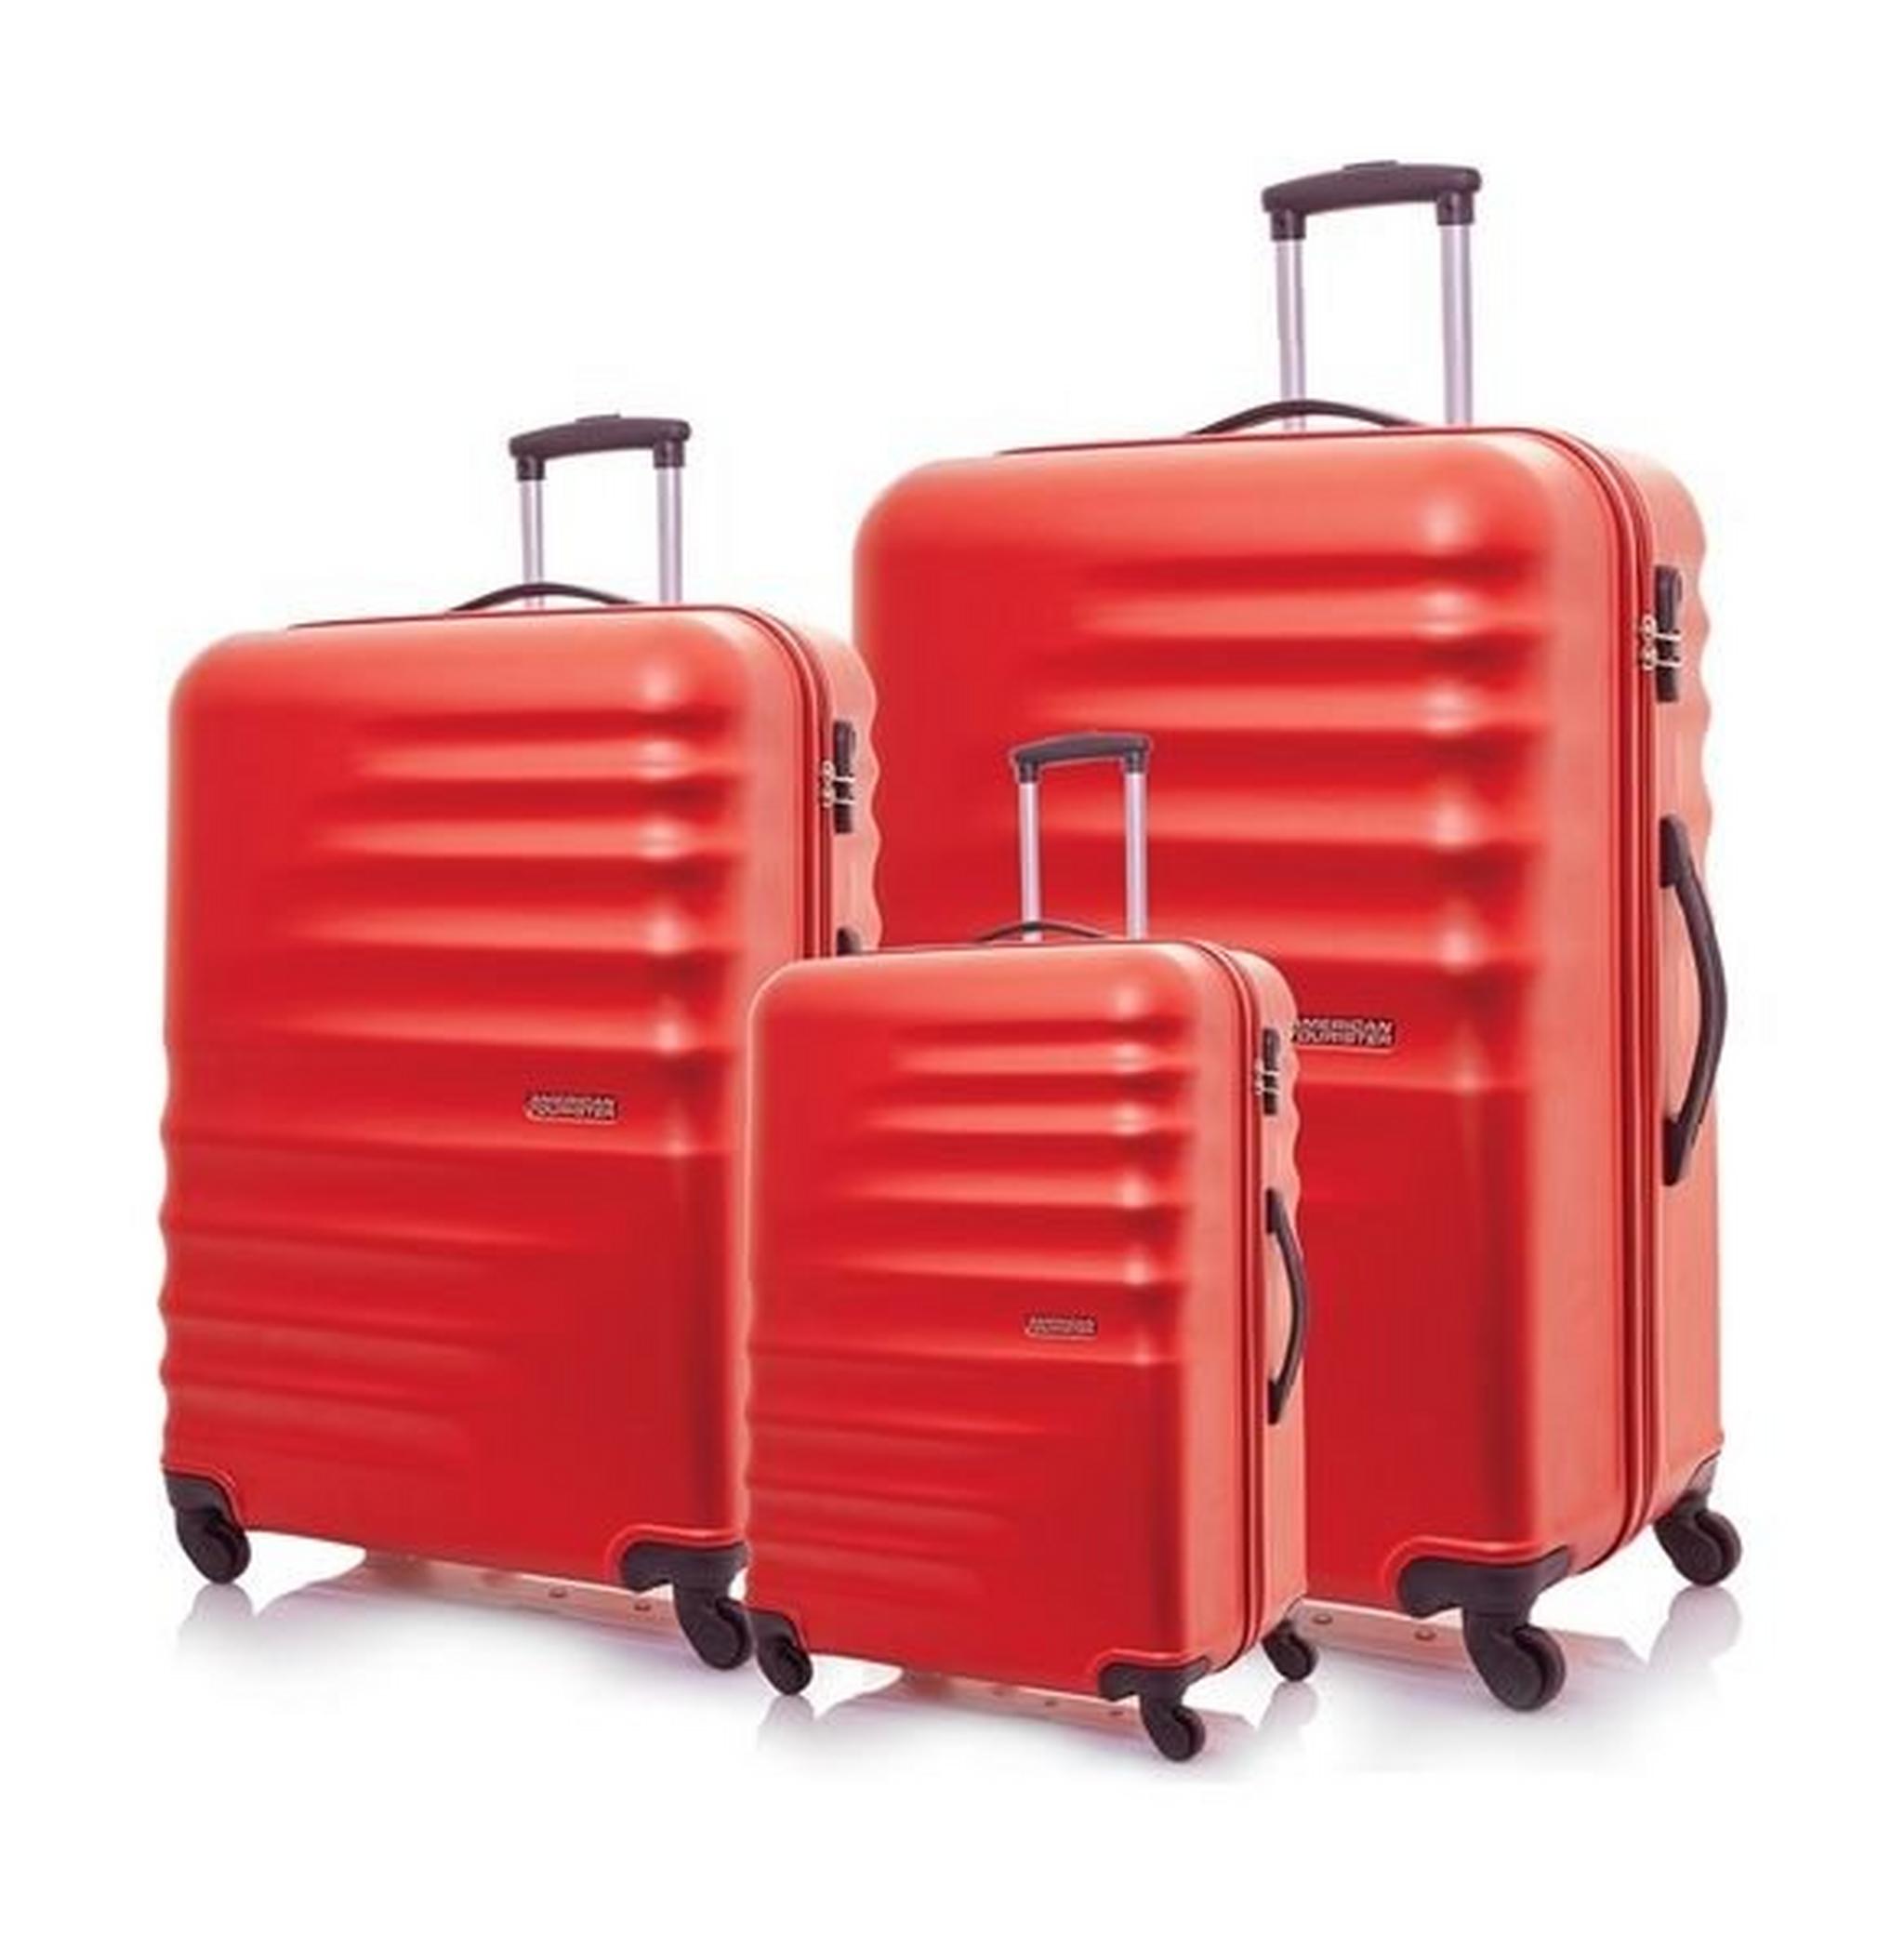 حقيبة السفر الصلبة بريستون بعجلات من أمريكان توريستر - مجموعة من ٣ حقائب (٥٥+٦٧+٧٧ سم) - أحمر